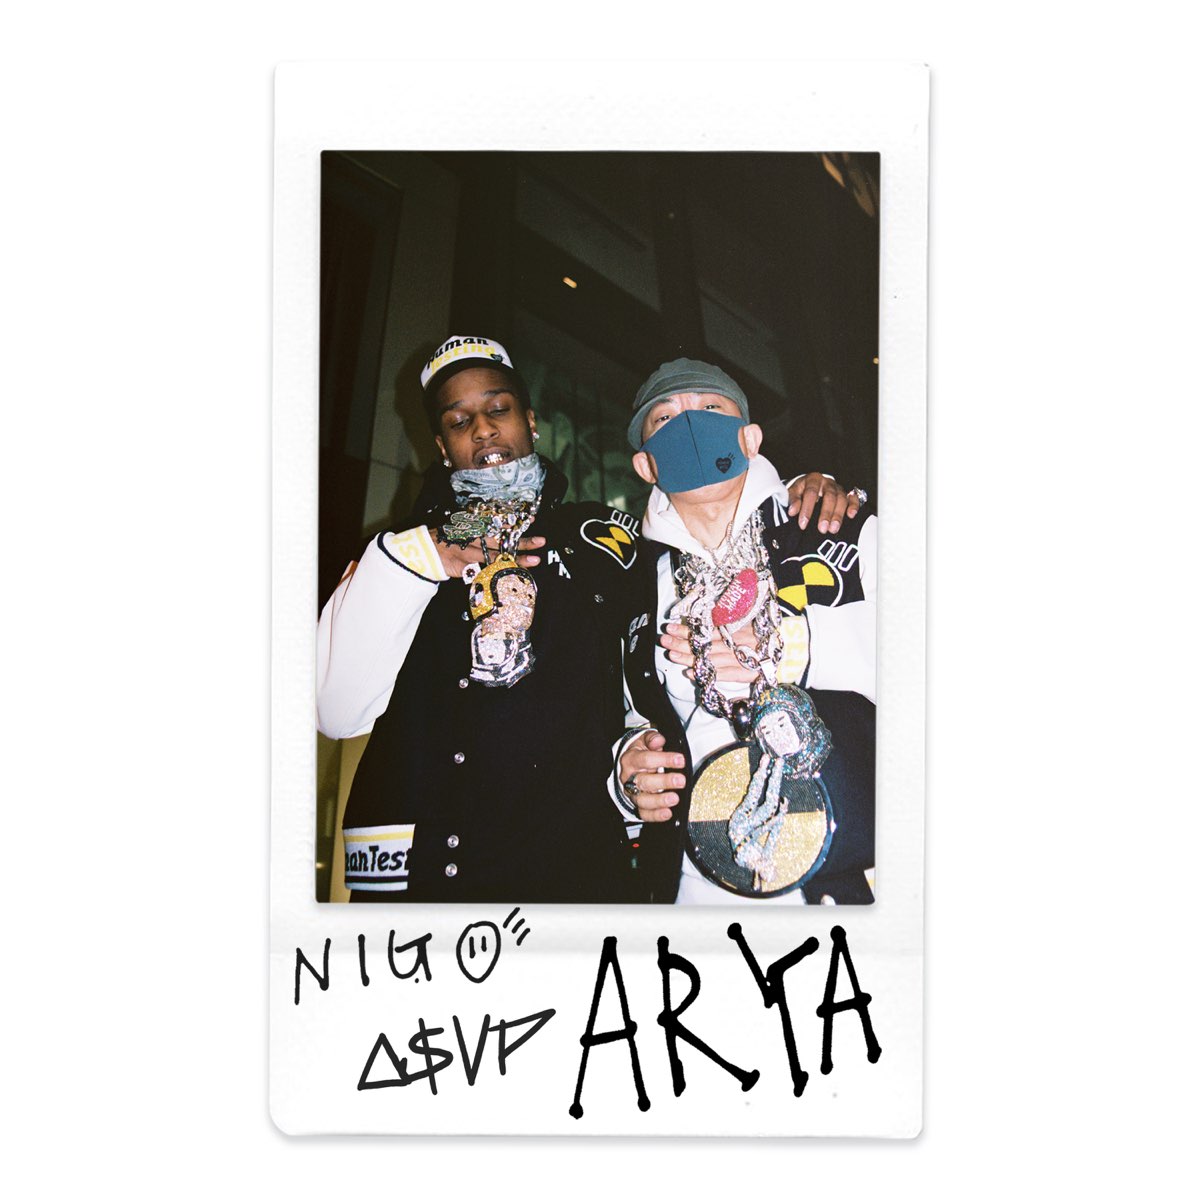 Nigo ft. featuring A$AP Rocky Arya cover artwork